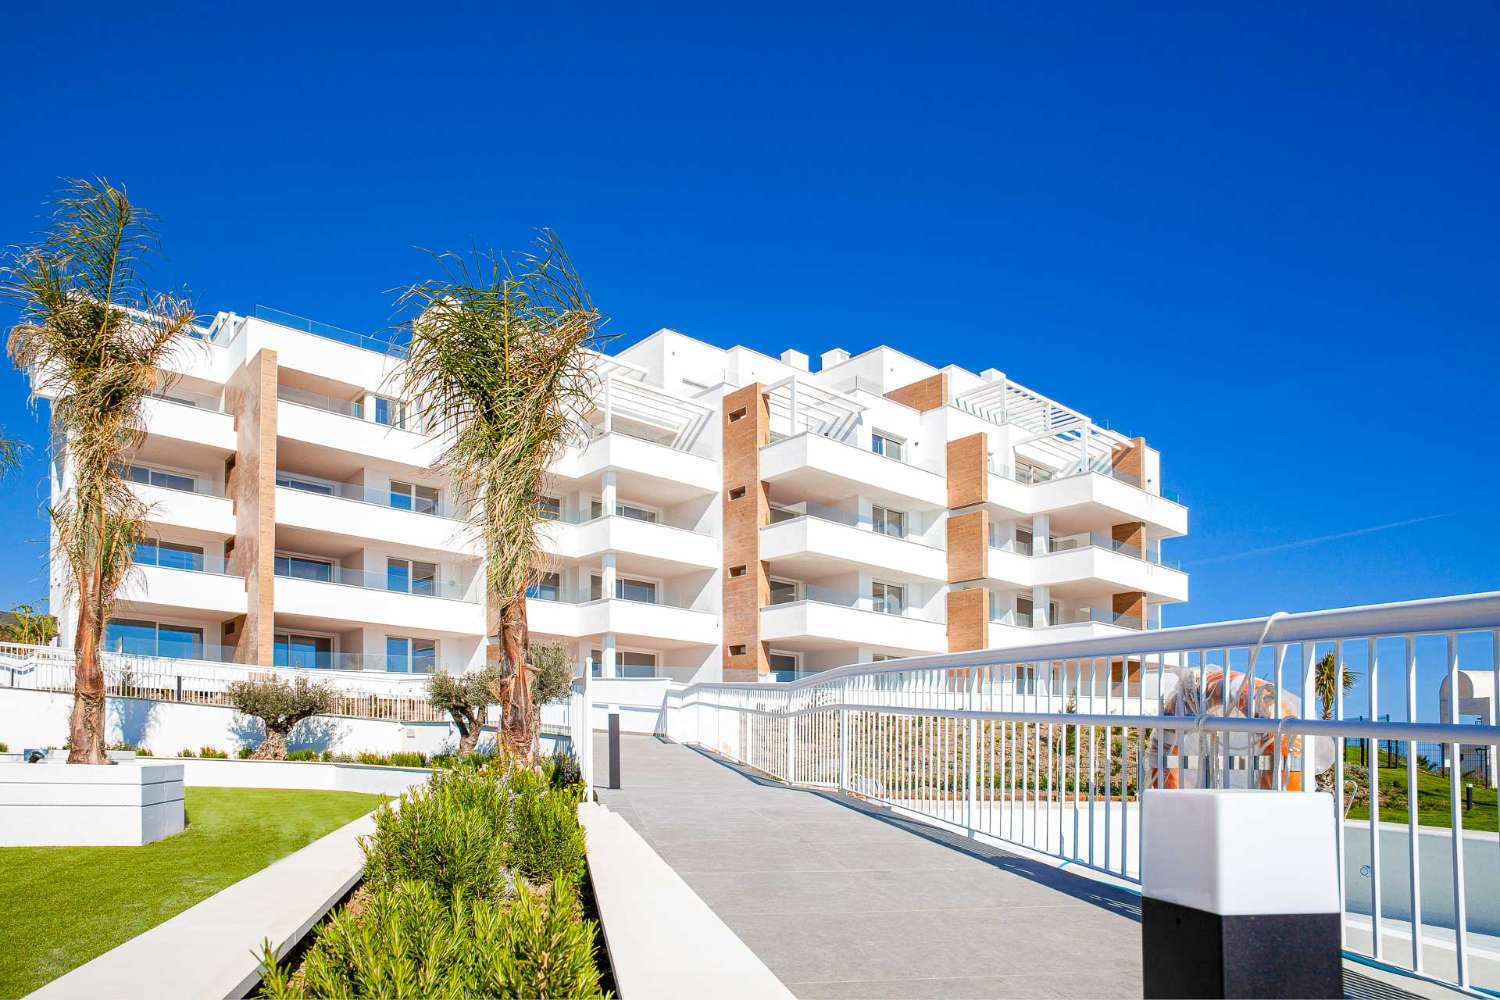 Apartamento en venta en torrox costa con bonitas vistas al mar, garaje y piscina comunitaria